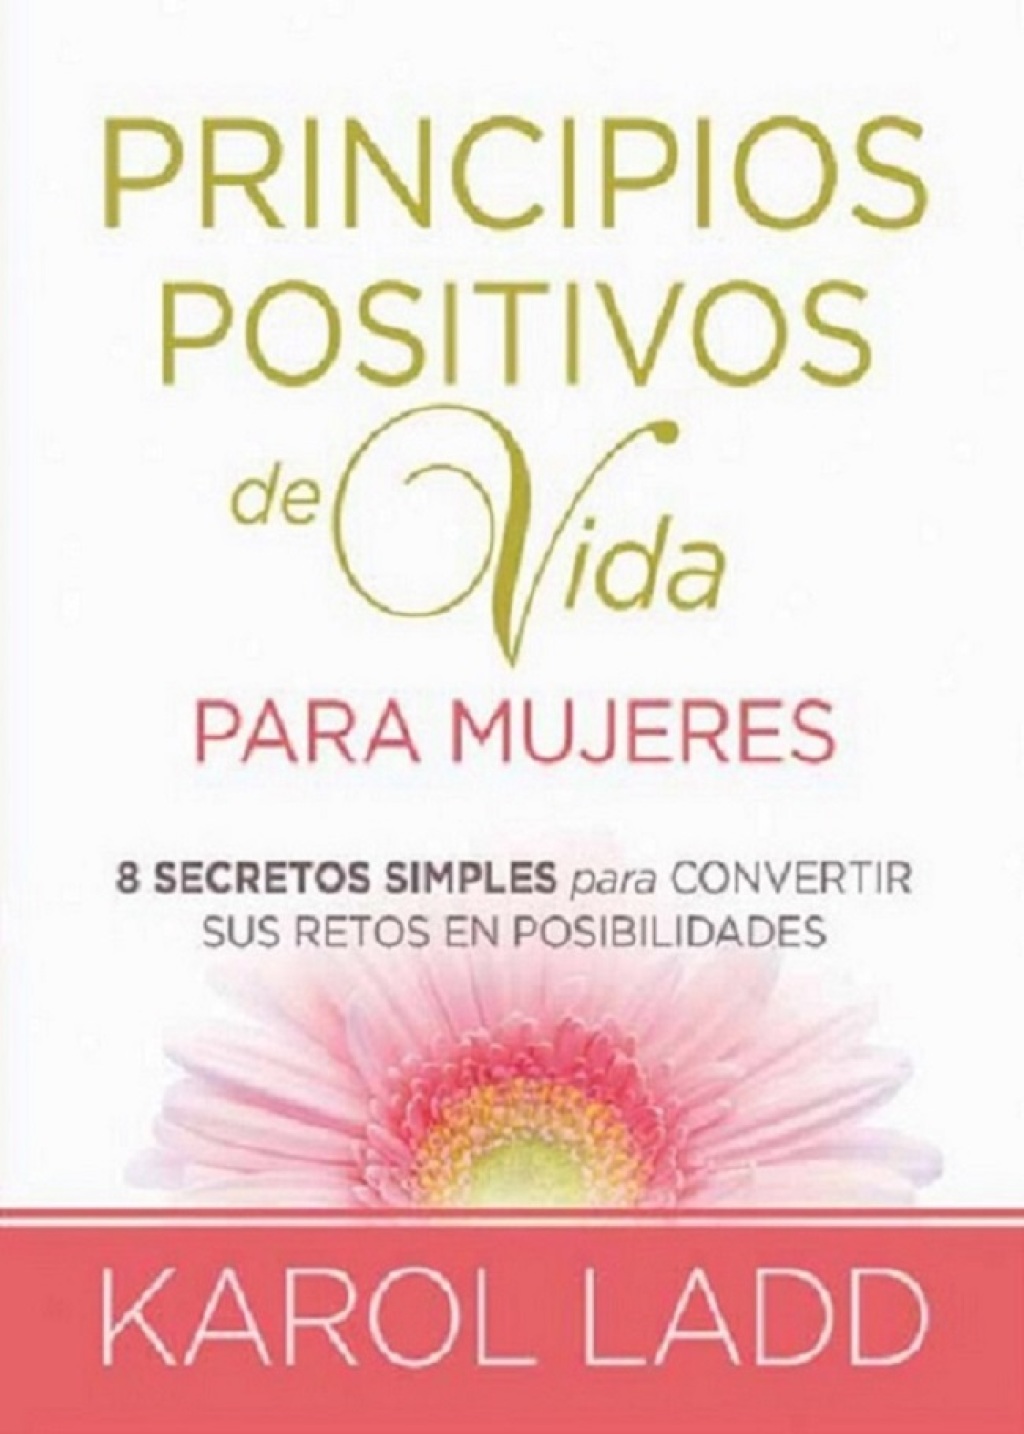 Principios positivos de vida para mujeres (eBook) - Karol Ladd